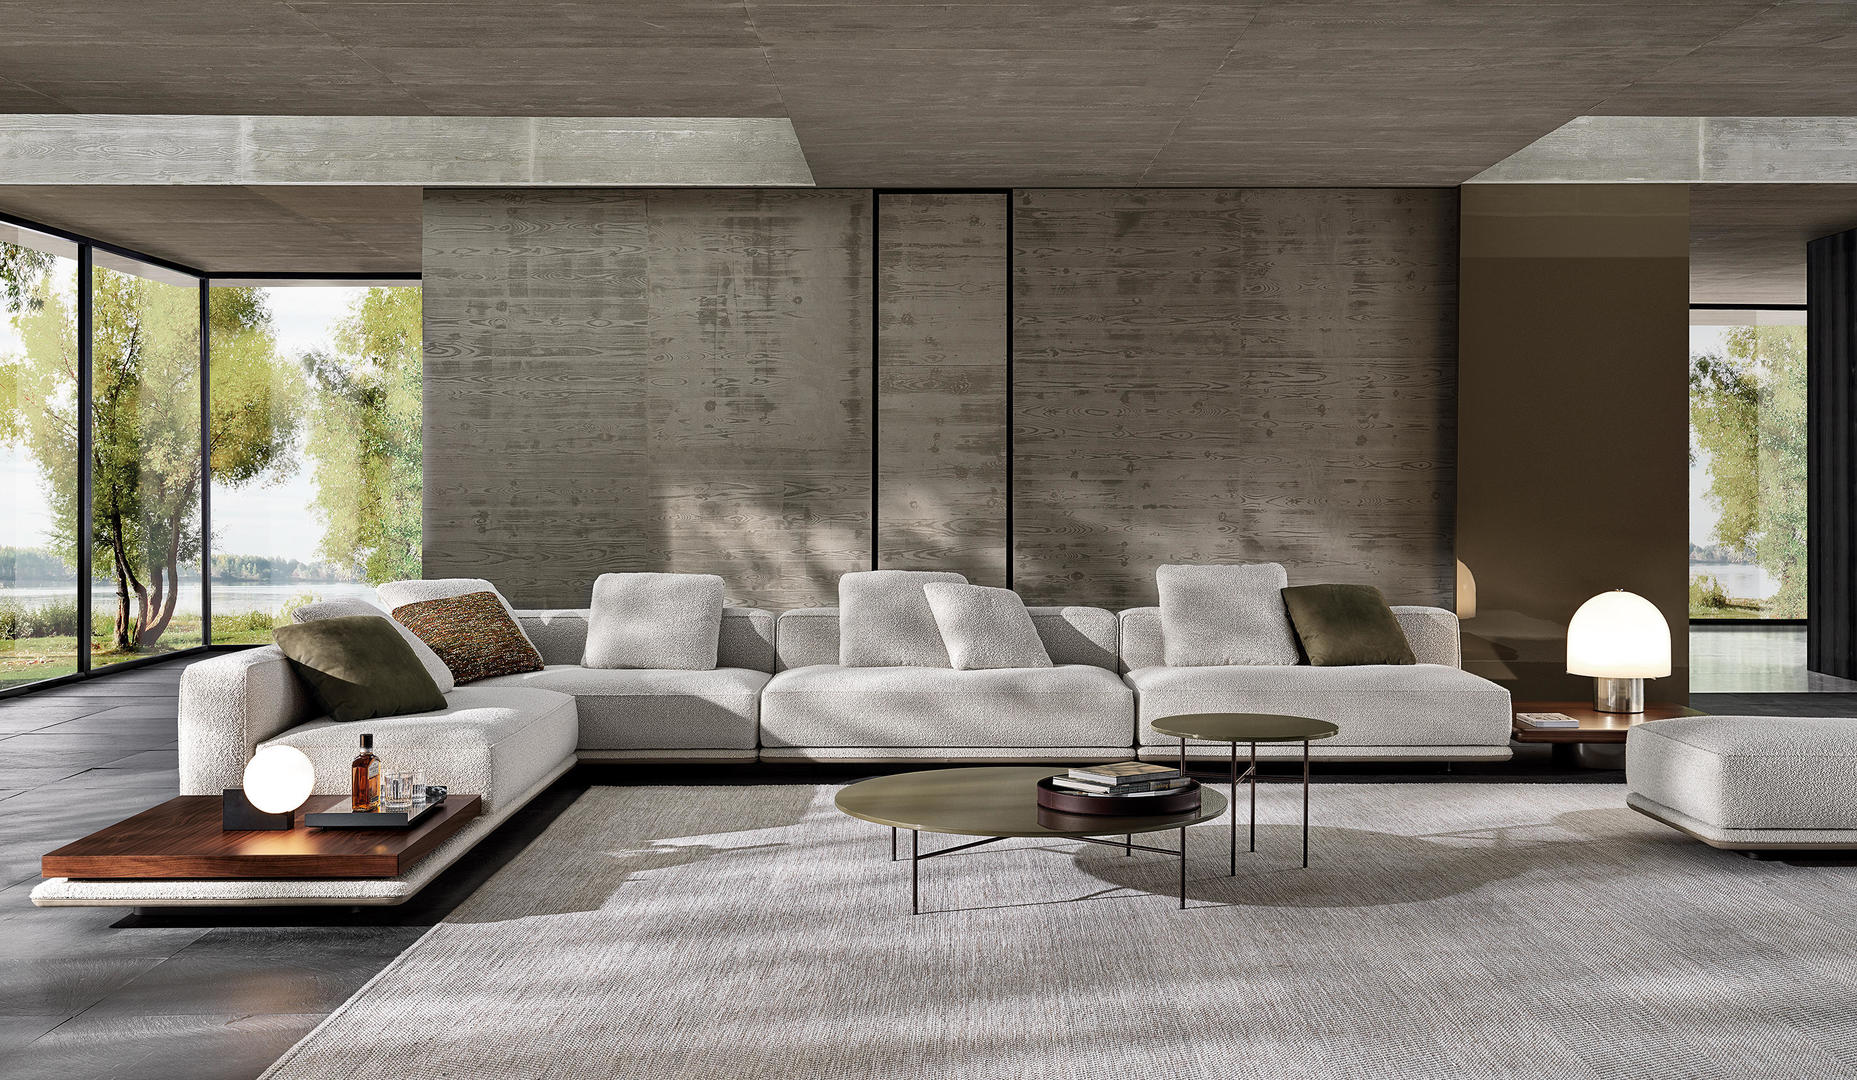 HORA Barneveld Minotti Horizonte bank modulaire sofa design meubelen designmeubelen.jpg